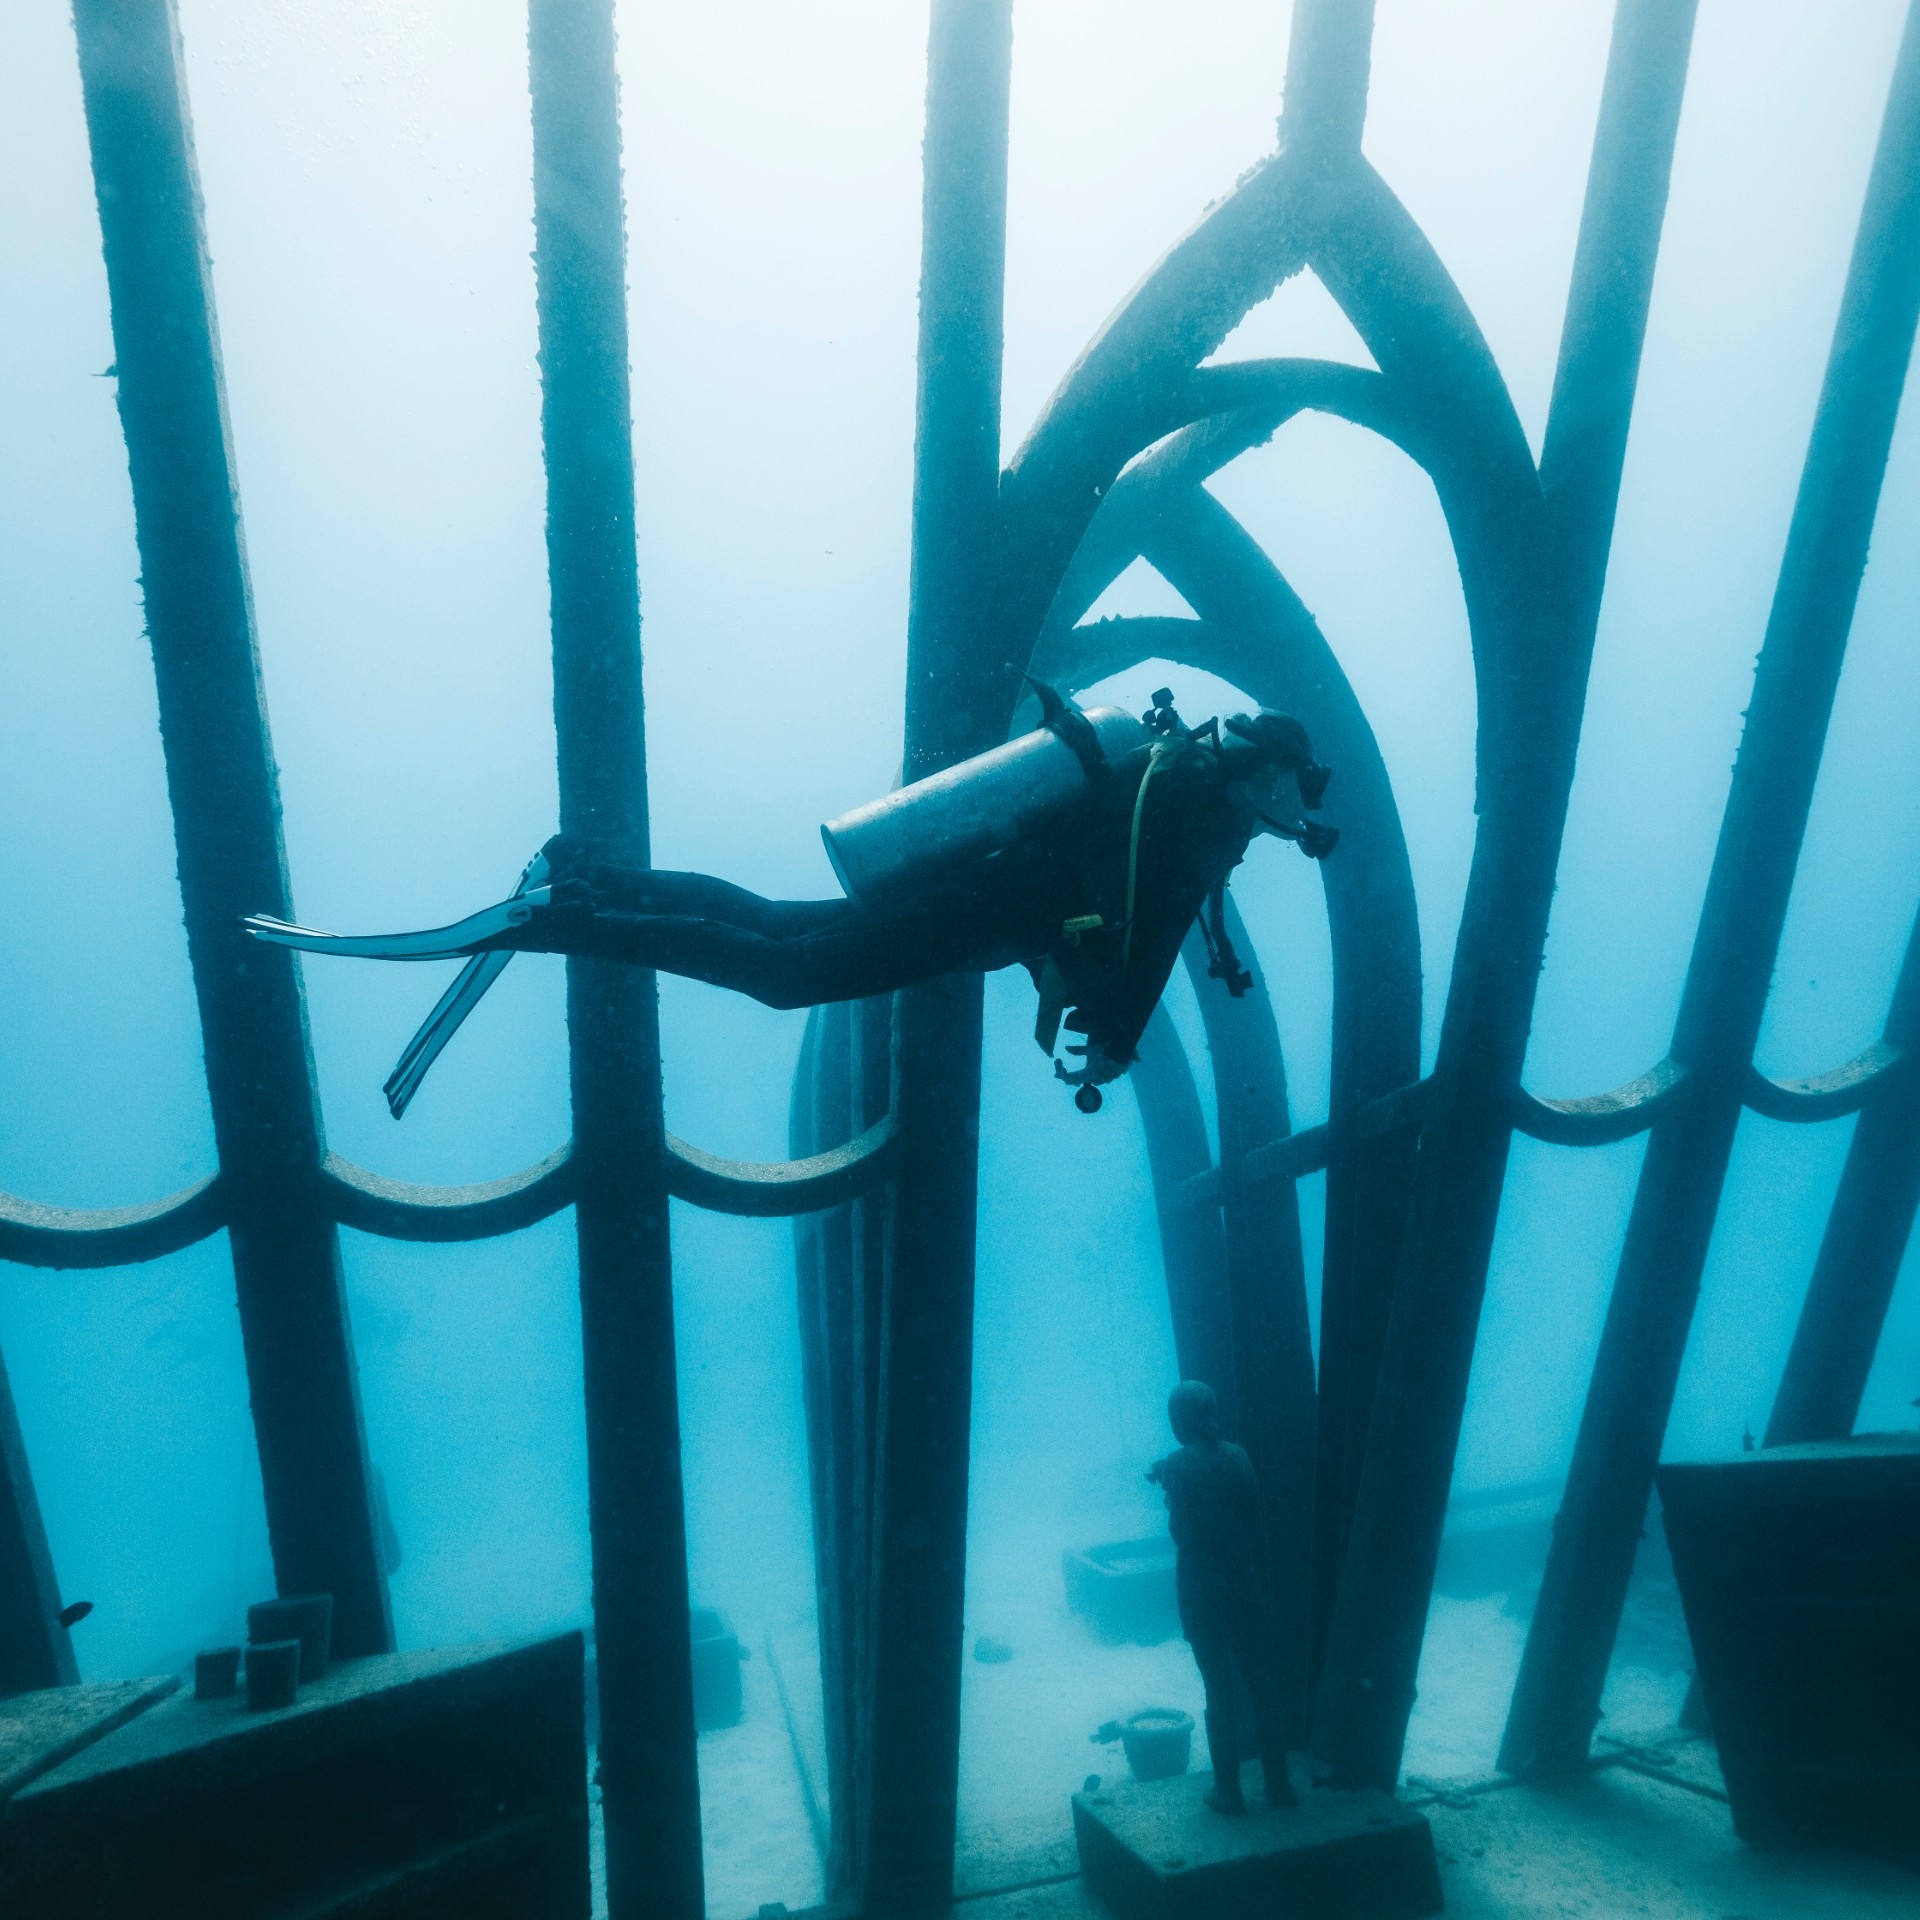 一名水肺潜水员在水下艺术博物馆珊瑚温室内的雕塑旁边潜游 © Gemma Molinaro 摄影师版权所有